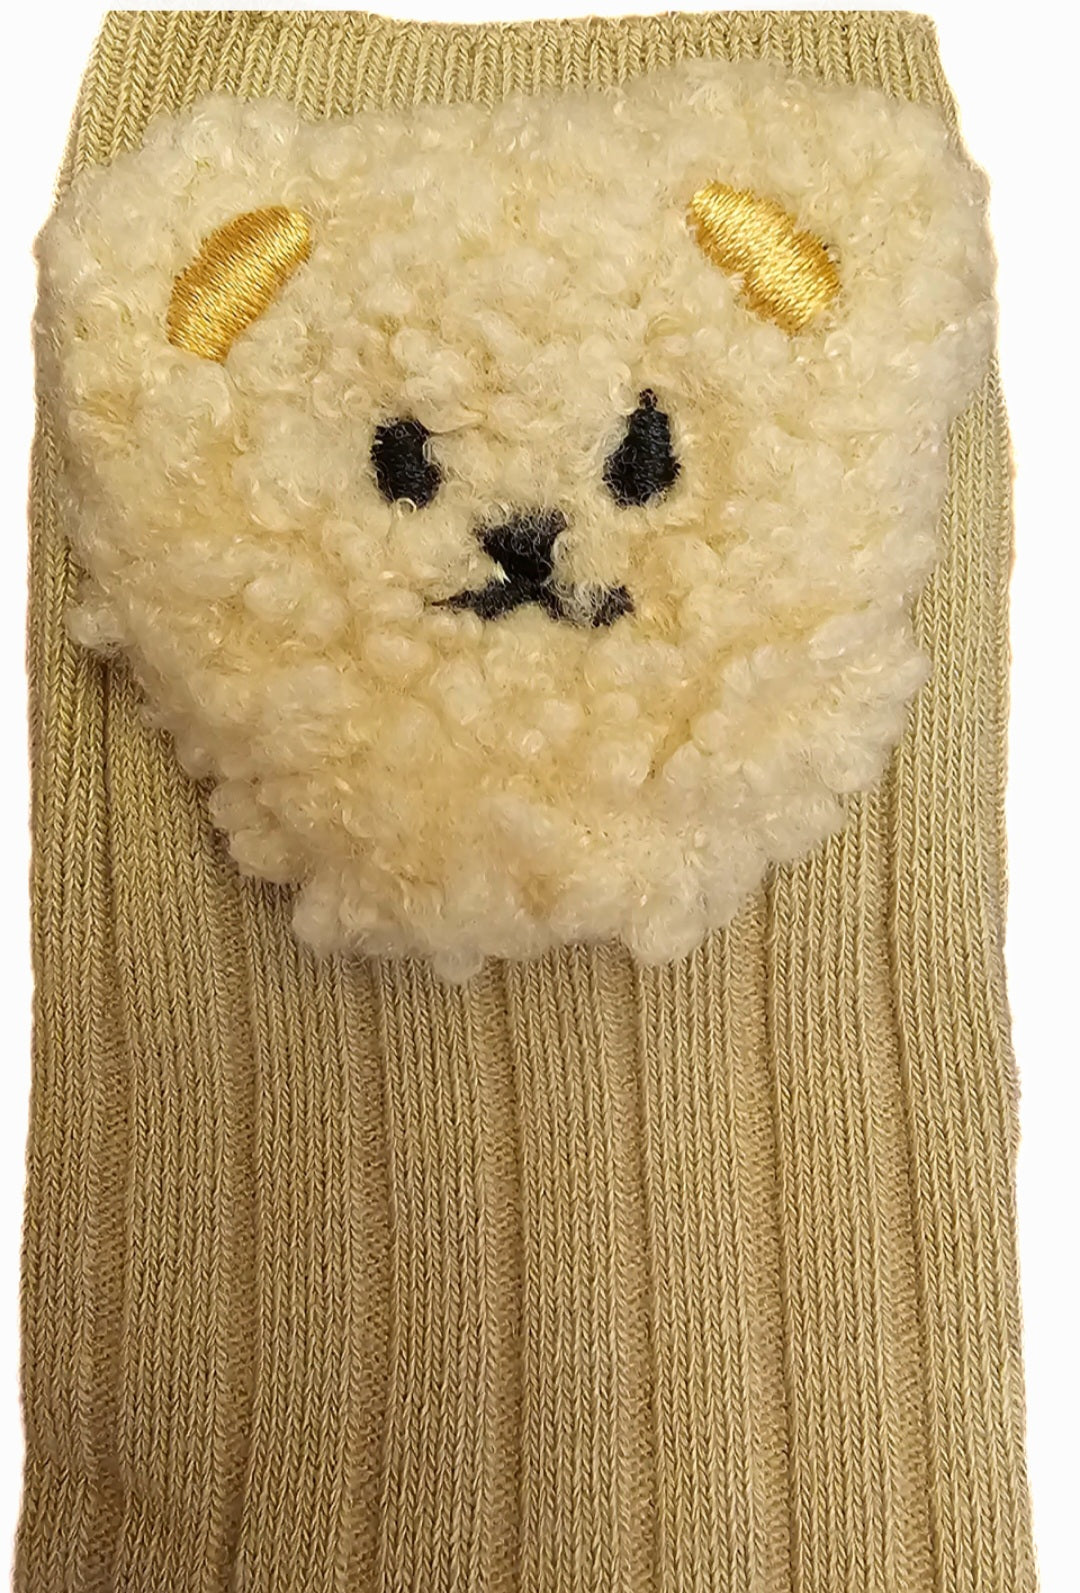 Teddy bear face socks (thinner bear)